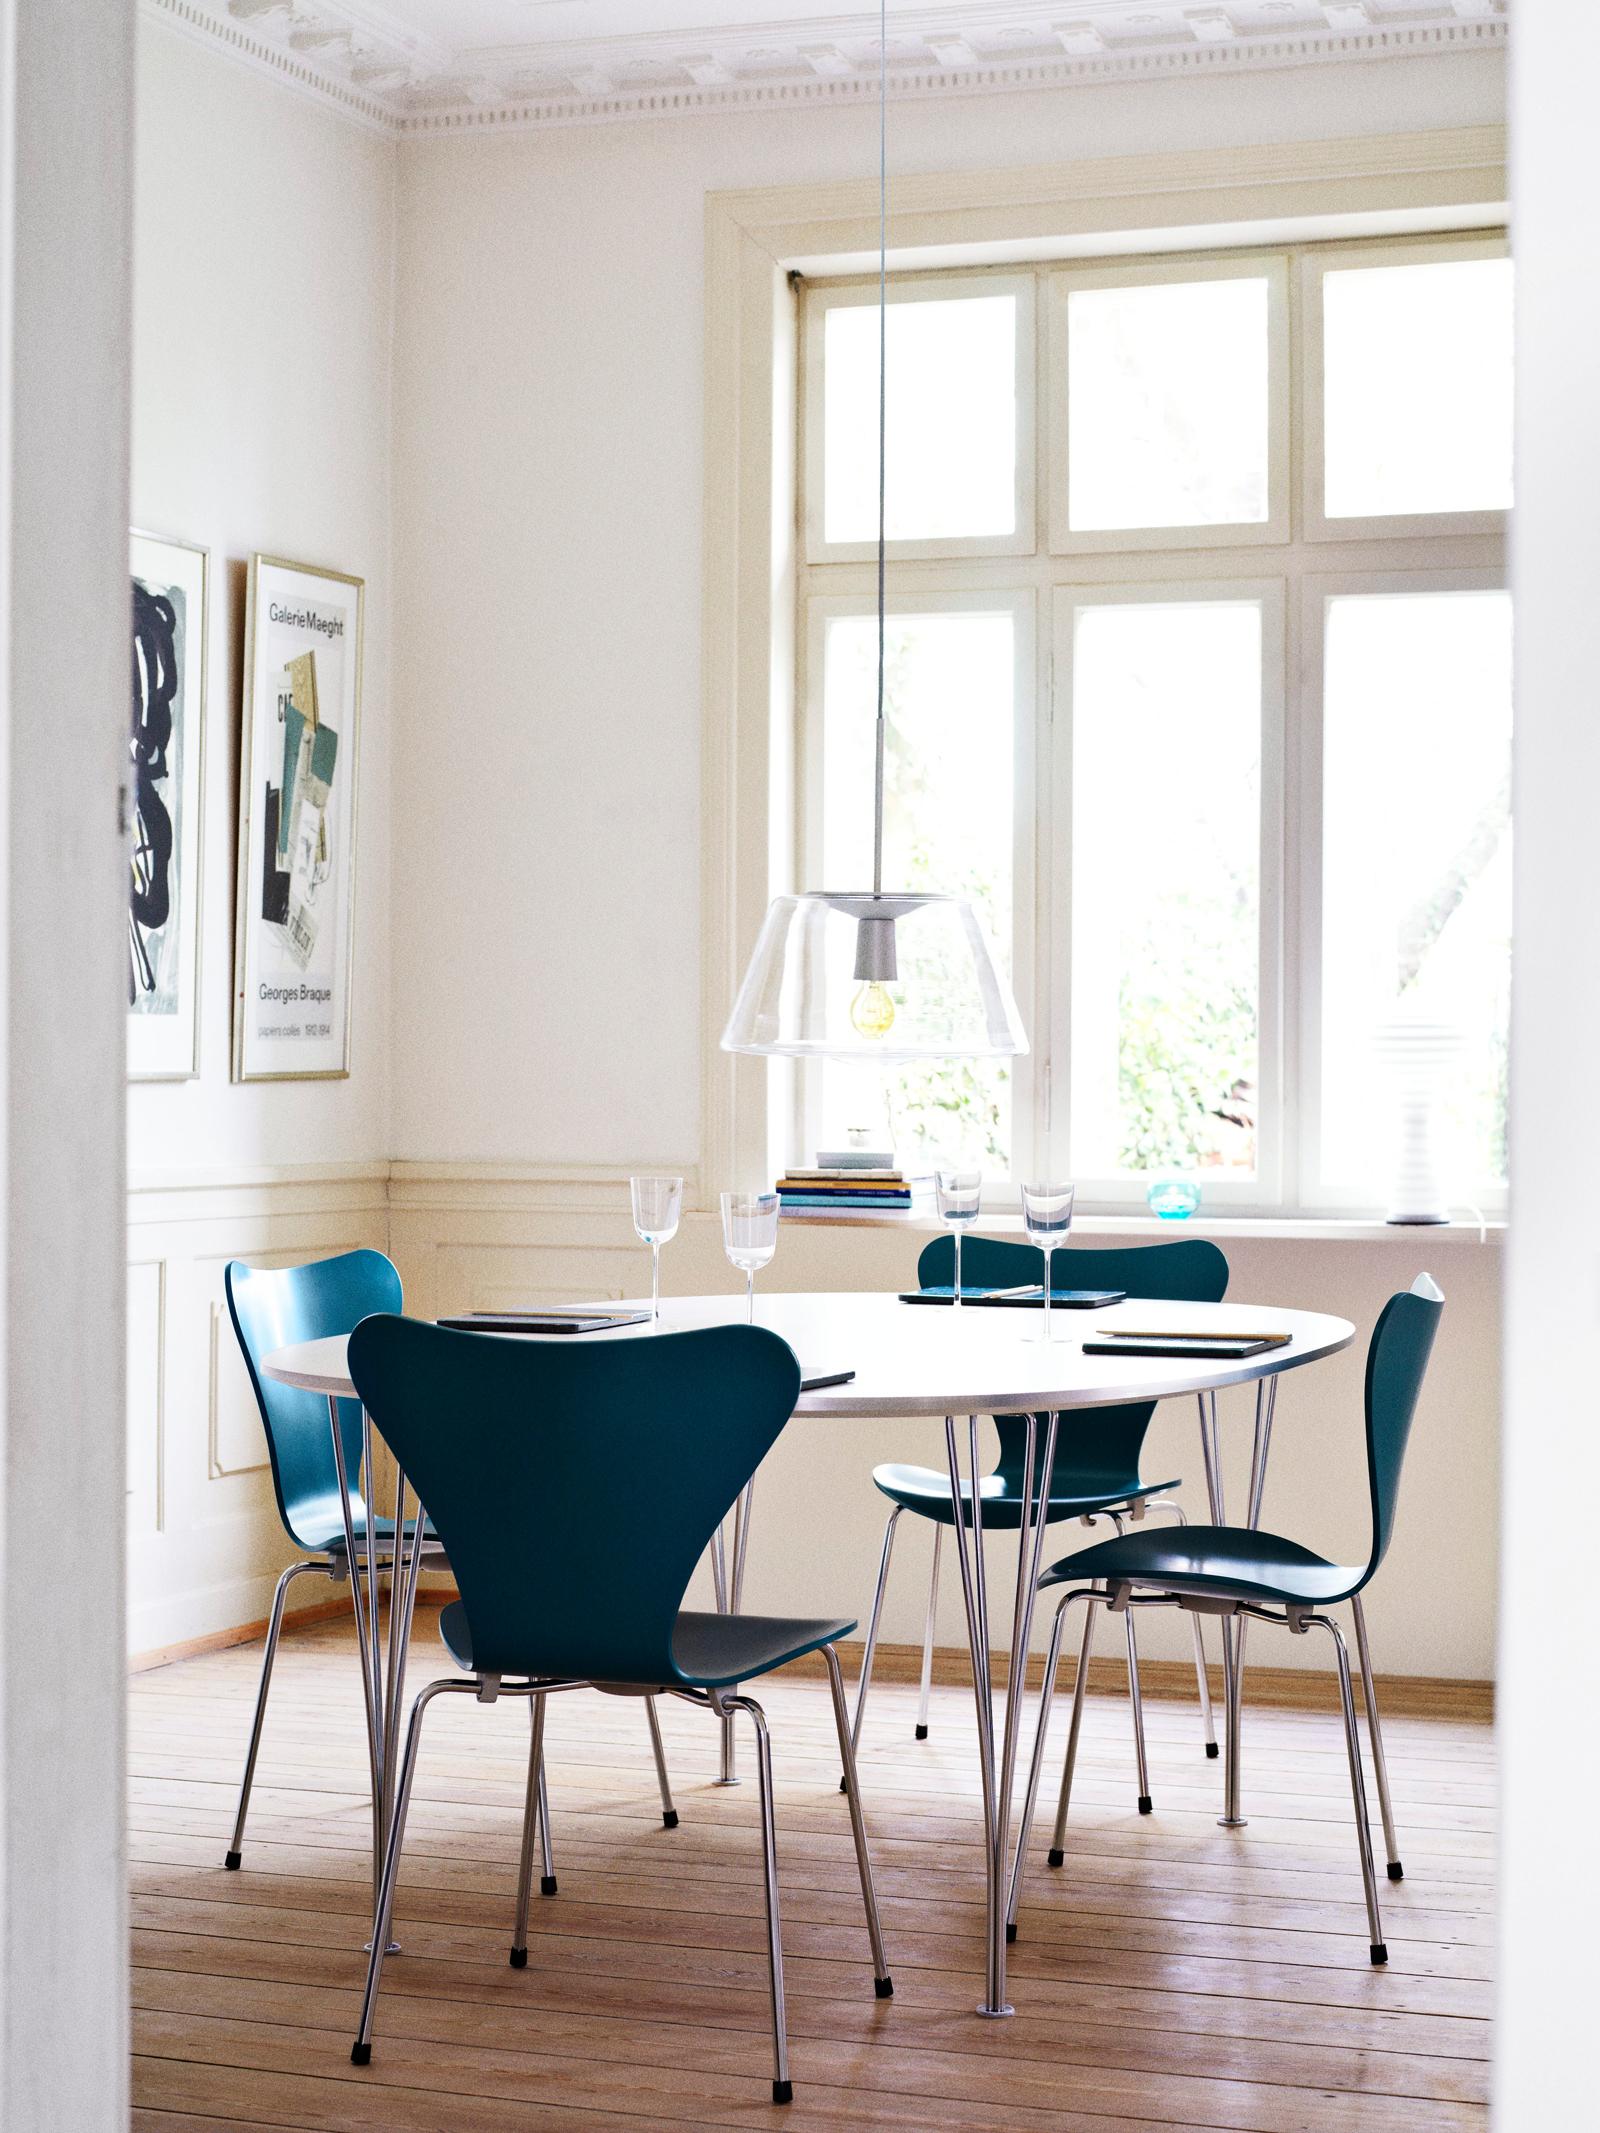 Blaue Holzstühle um runden Esstisch #dielenboden #esstisch #holzstuhl #runderesstisch ©Fritz Hansen/Sus Bojesen Rosenqvist